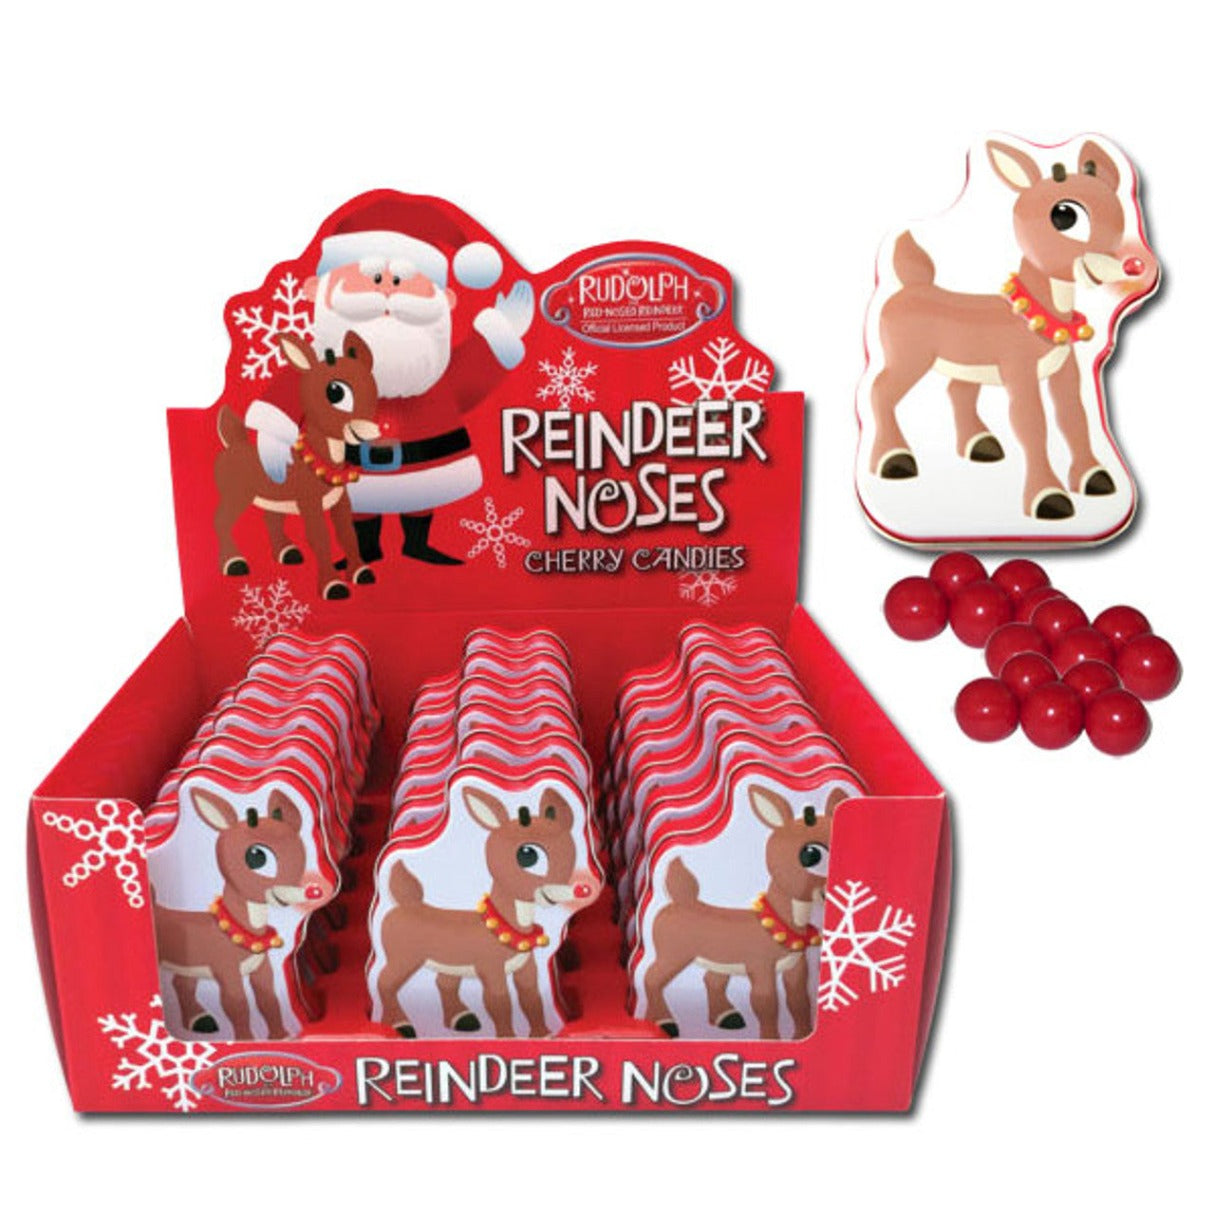 Rudolph Reindeer Nose Candy Tin 1.2oz - 18ct